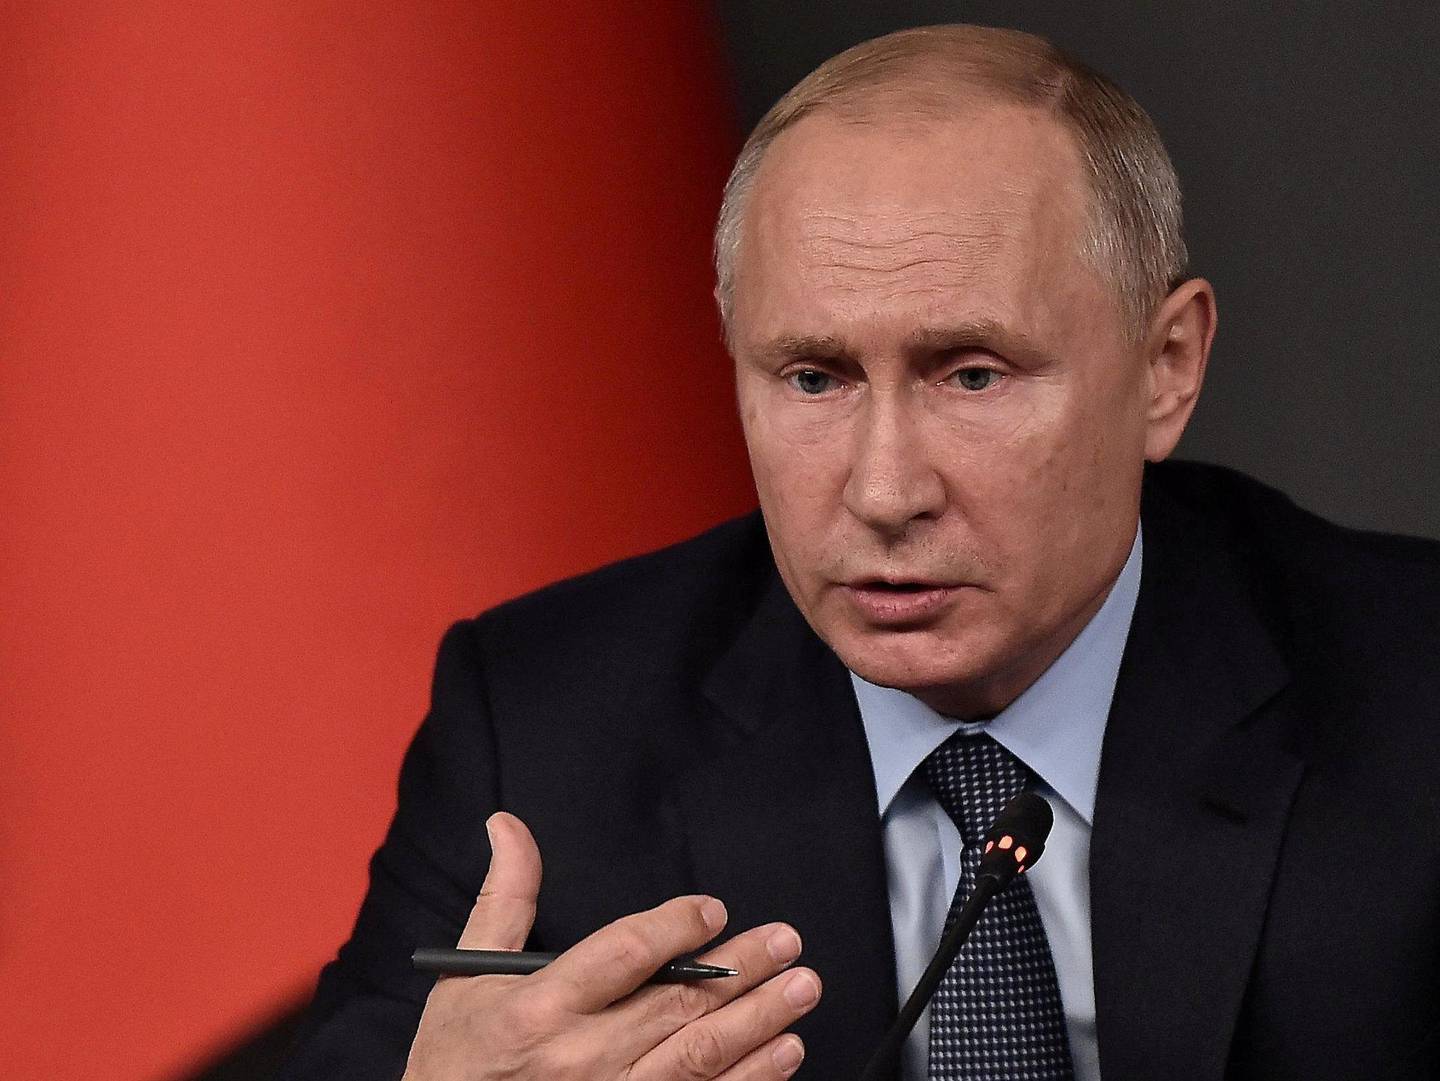 ØVER OGSÅ: Russland holder sin øvelse samtidig med Trident Juncture. Her president Vladimir Putin. FOTO: NTB SCANPIX